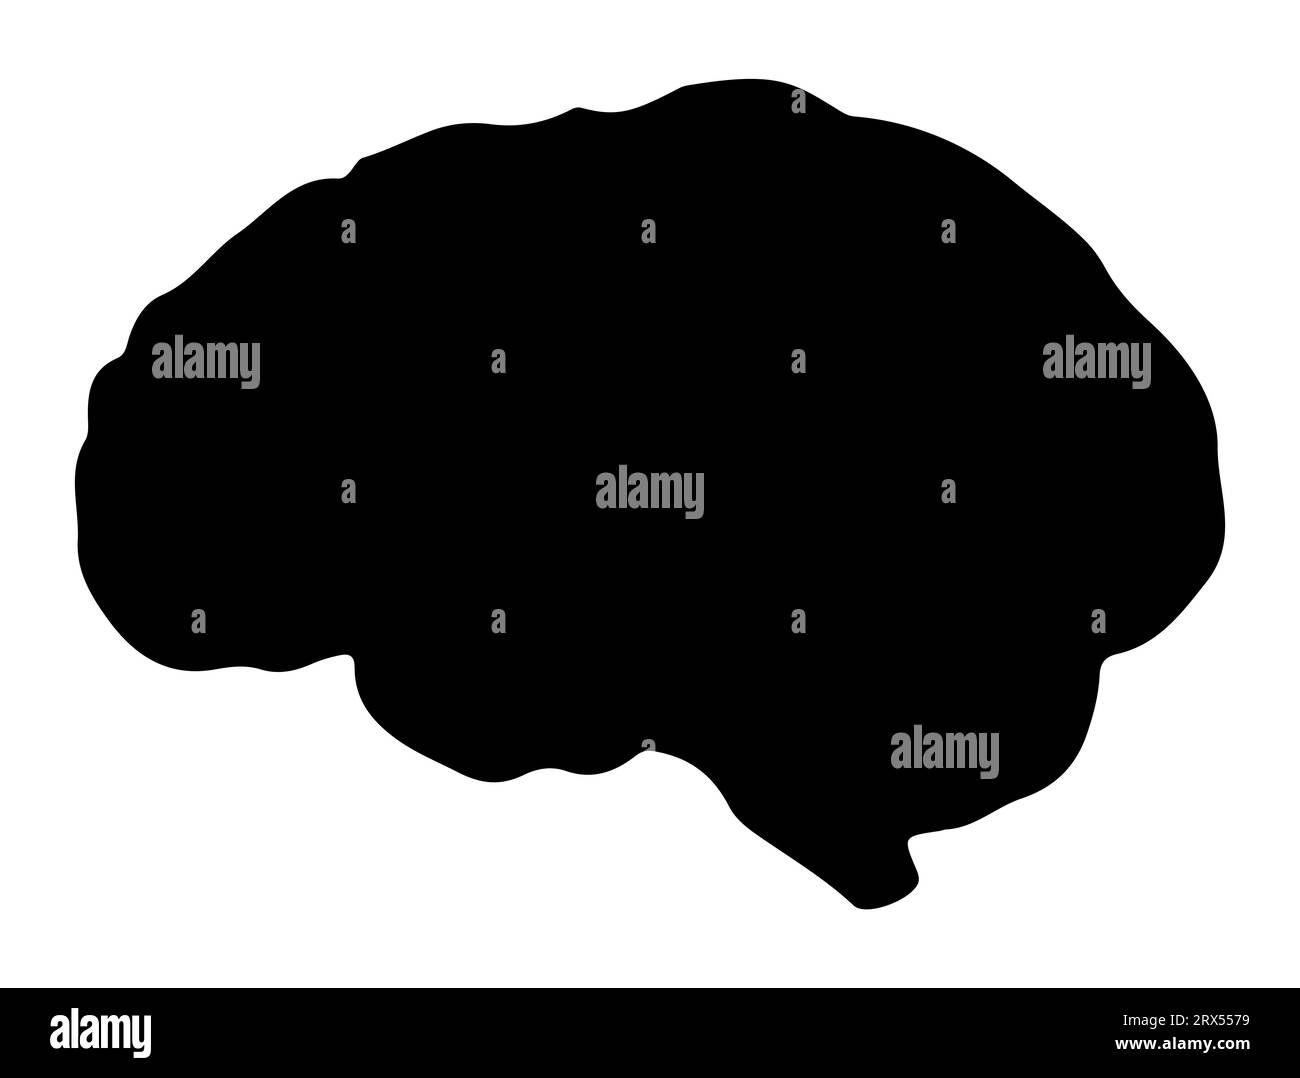 Fond blanc de vecteur art de silhouette de cerveau humain Illustration de Vecteur